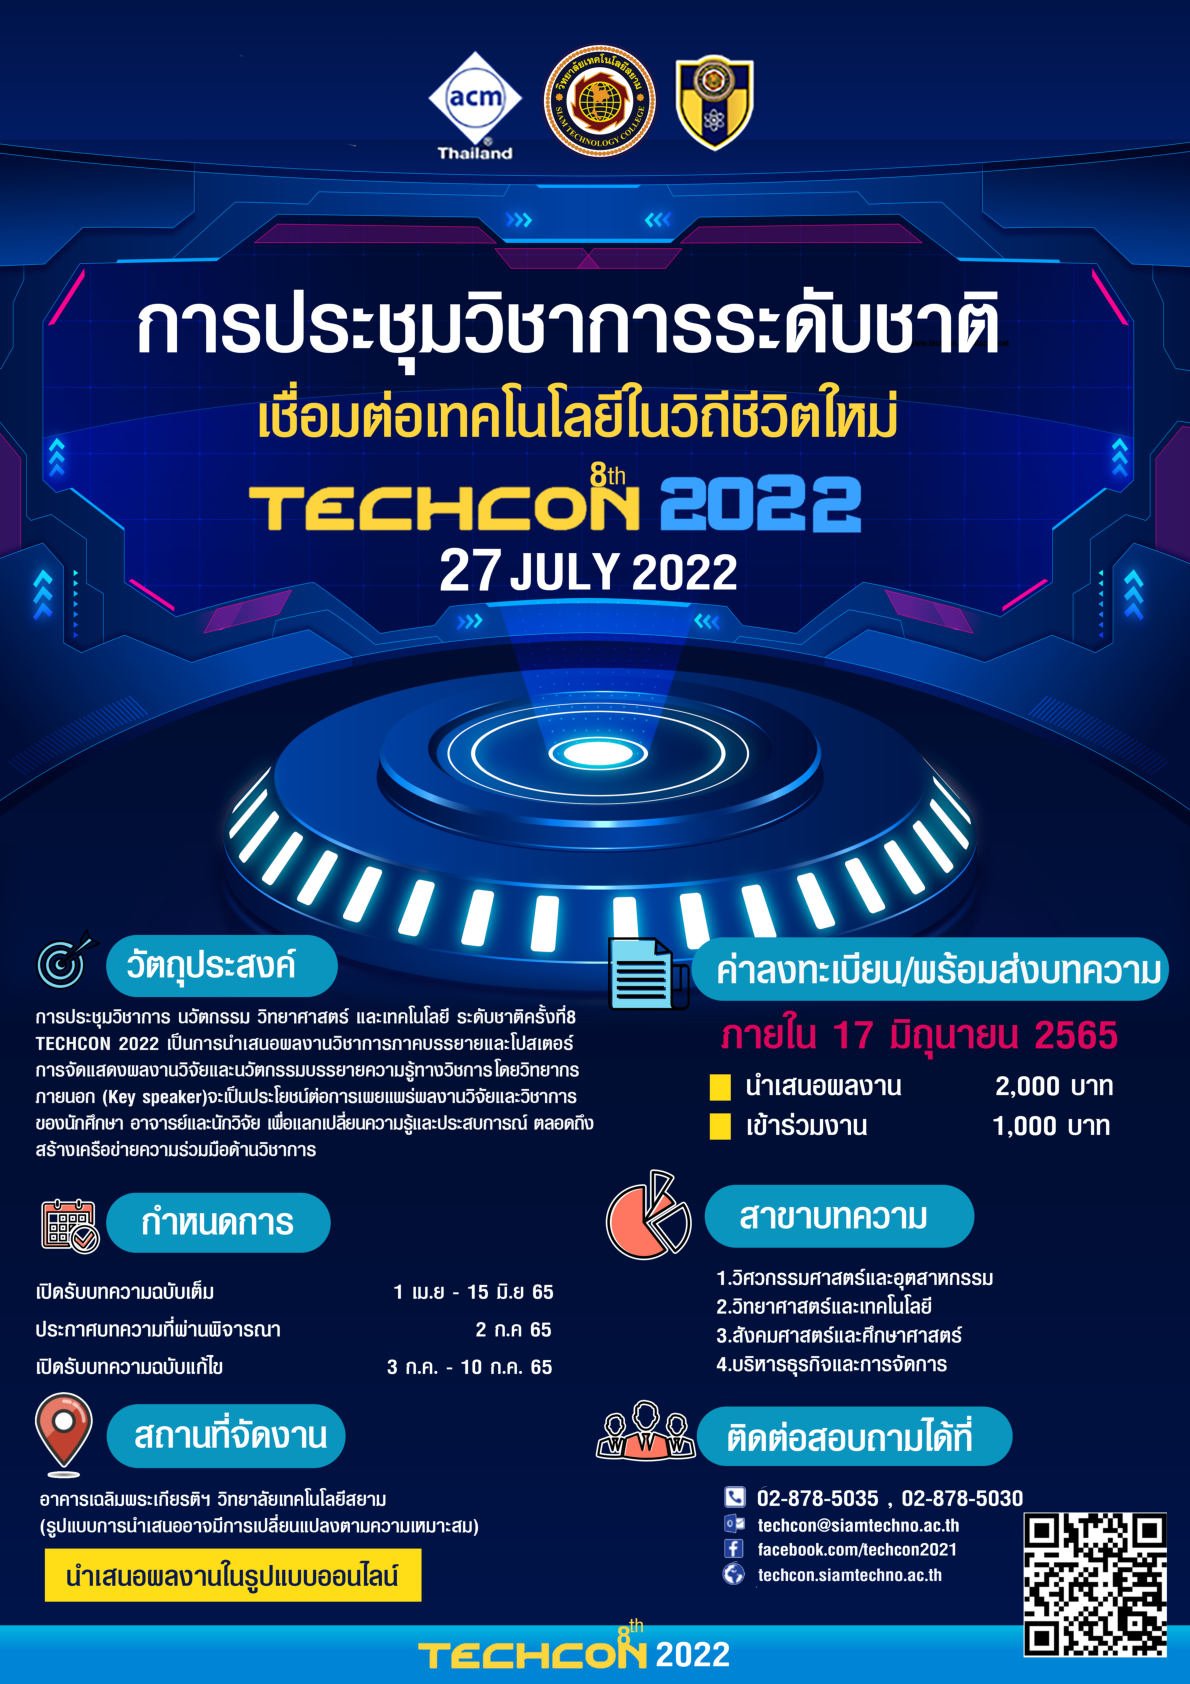 ขอเชิญเข้าร่วมนำเสนอผลงานวิจัยและนวัตกรรม ในการประชุมวิชาการระดับชาติ ครั้งที่ 8 (The 8th TECHCON 2022)